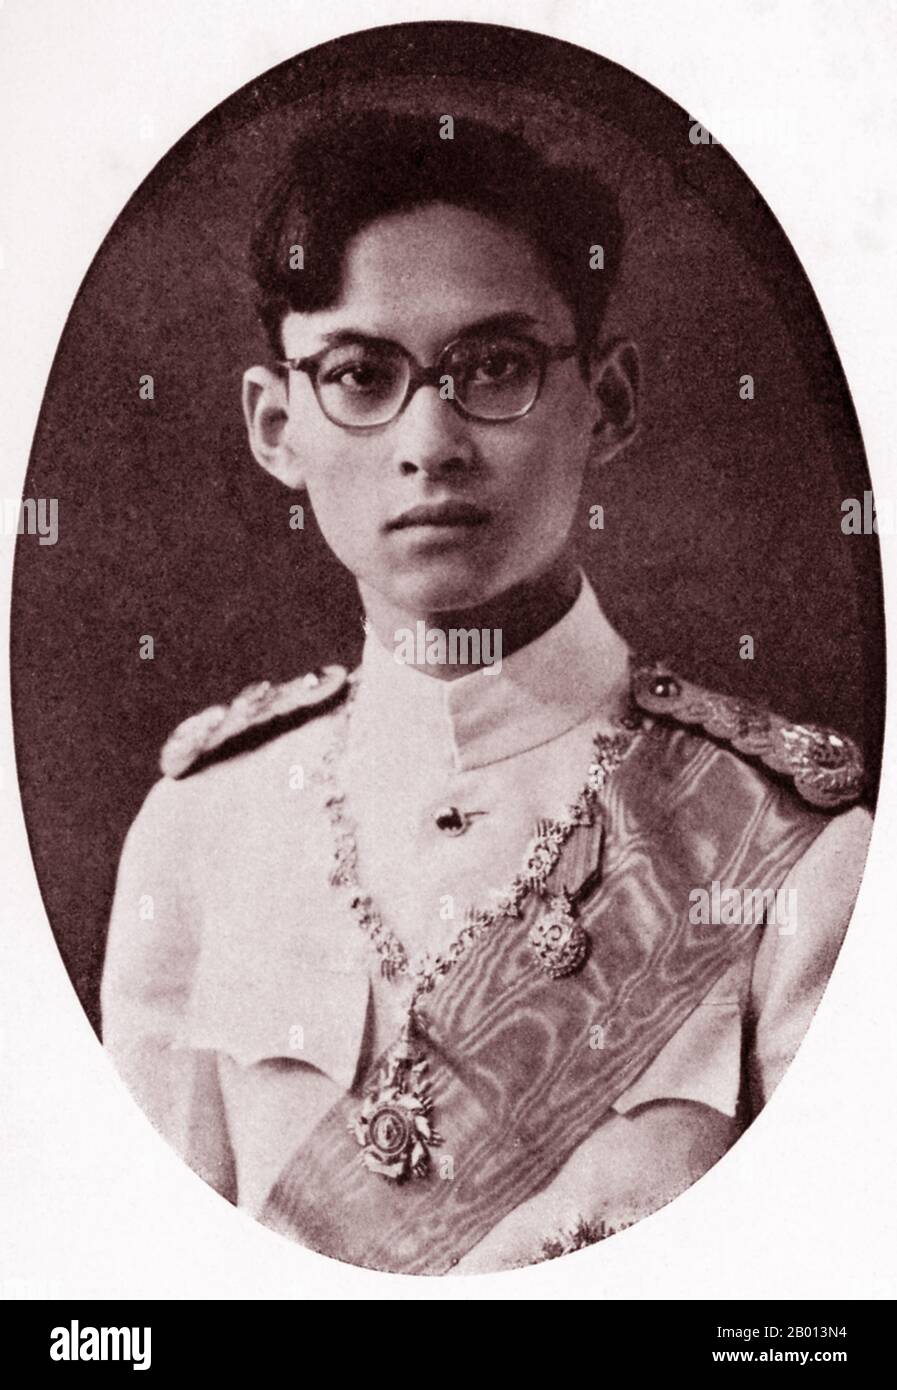 Thaïlande: Roi Rama IX, Bhumibol Adulyadej (5 décembre 1927 – 13 octobre 2016), 9e monarque de la dynastie Chakri, c. 1945. Bhumibol Adulyadej (Phumiphon Adunyadet) était le 9e roi de Thaïlande. Il était connu sous le nom de Rama IX, et au sein de la famille royale thaïlandaise et de proches associés simplement comme Lek. Régnant depuis le 9 juin 1946, il était l'un des chefs d'État les plus longtemps au monde et le monarque le plus ancien de l'histoire thaïlandaise. Banque D'Images